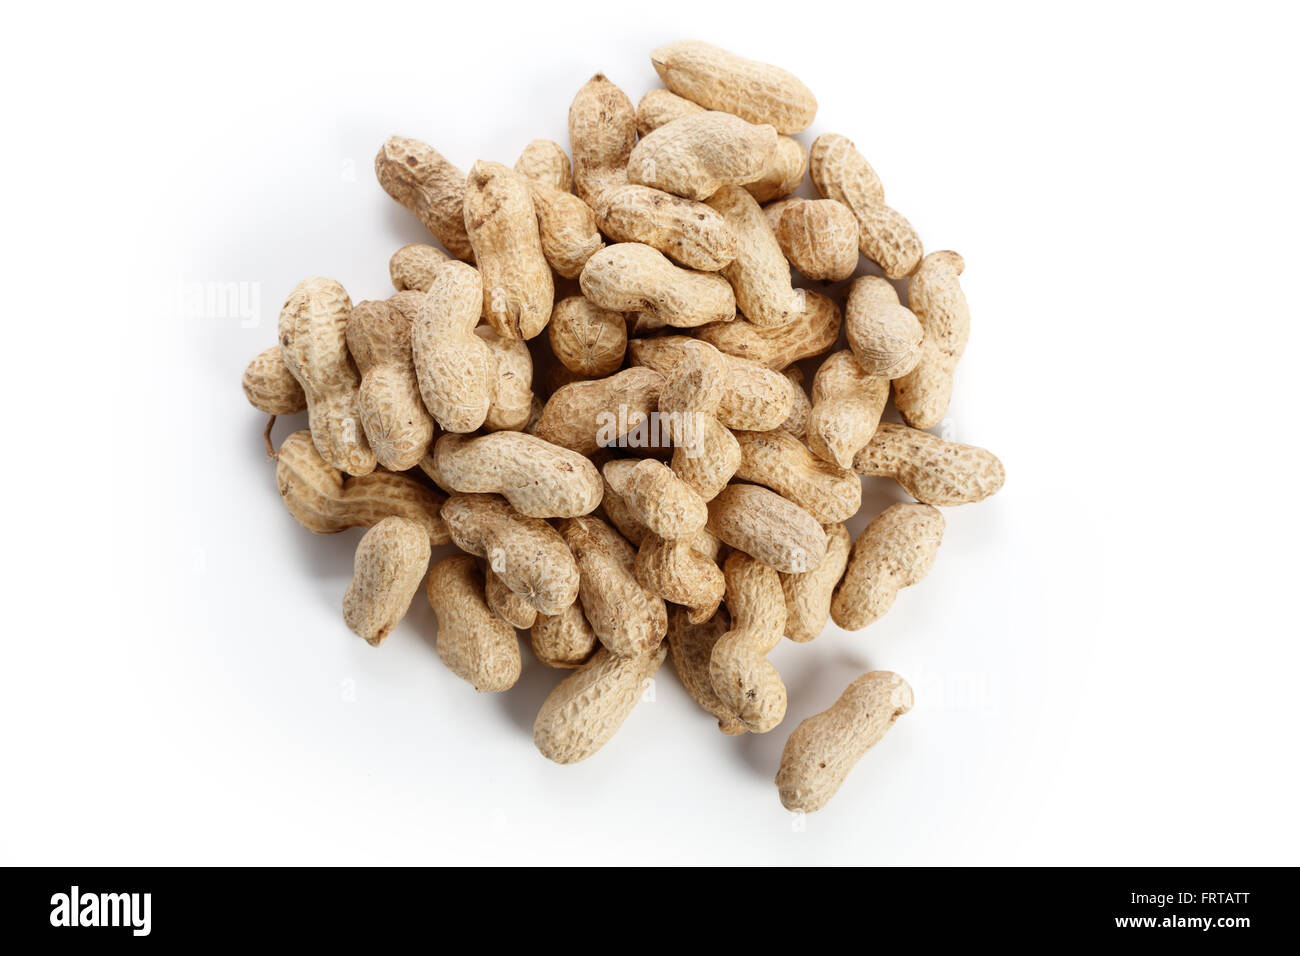 Les cacahuètes à sec, de l'ingrédient alimentaire avec un fond blanc. Banque D'Images